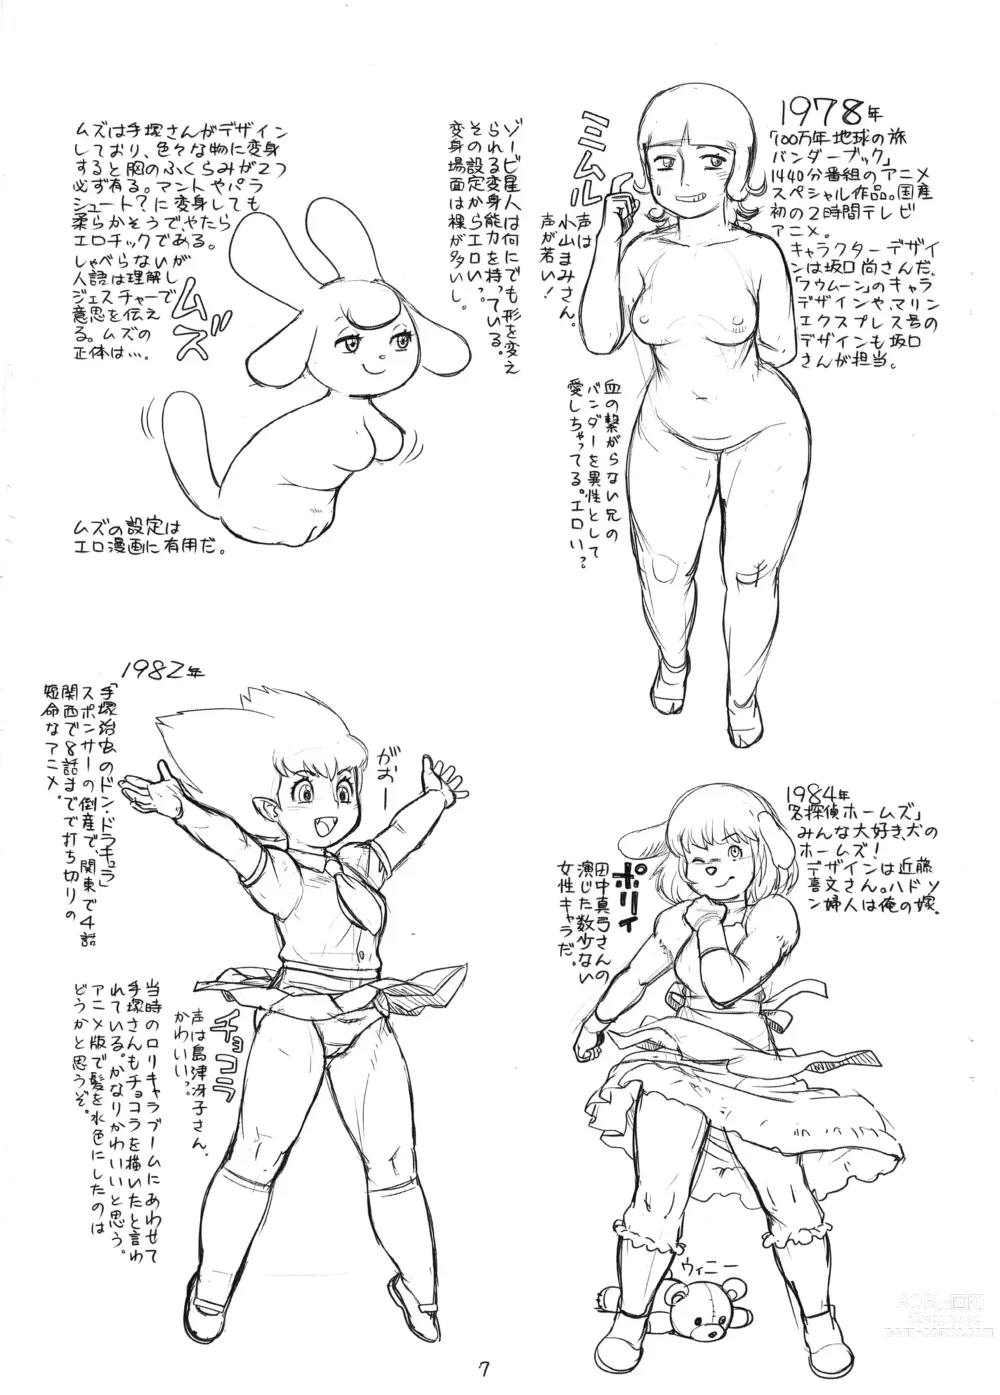 Page 7 of doujinshi Zoku Tsuioku Anime